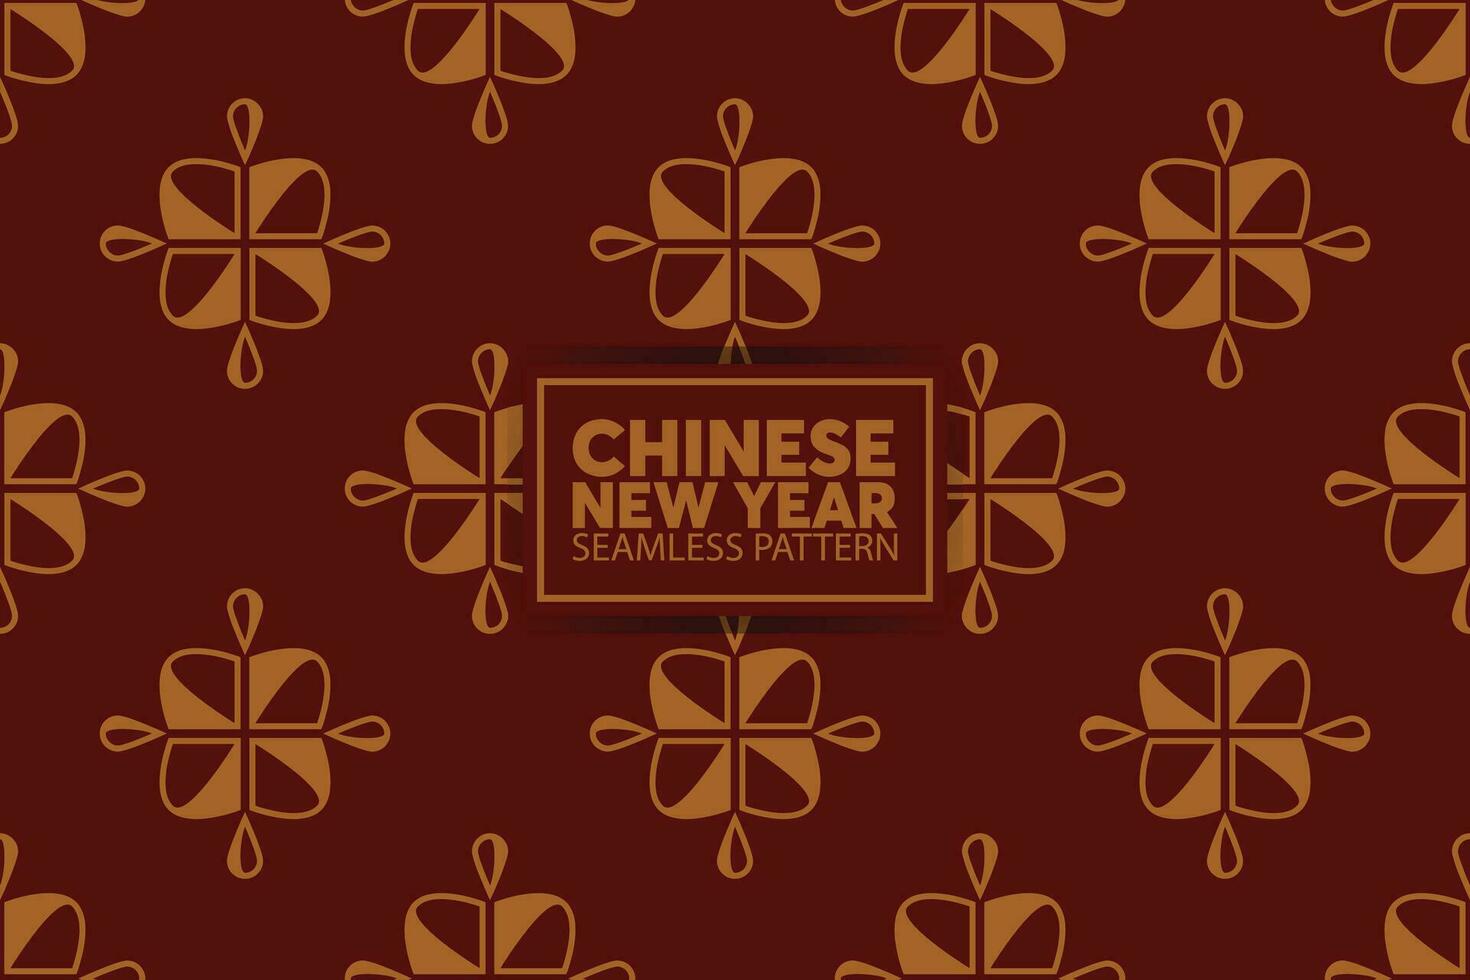 Chinese nieuw jaar traditioneel patroon. vector decoratief sieraden verzameling in Chinese stijl voor kaart, afdrukken, flyers, affiches, koopwaar, dekt.